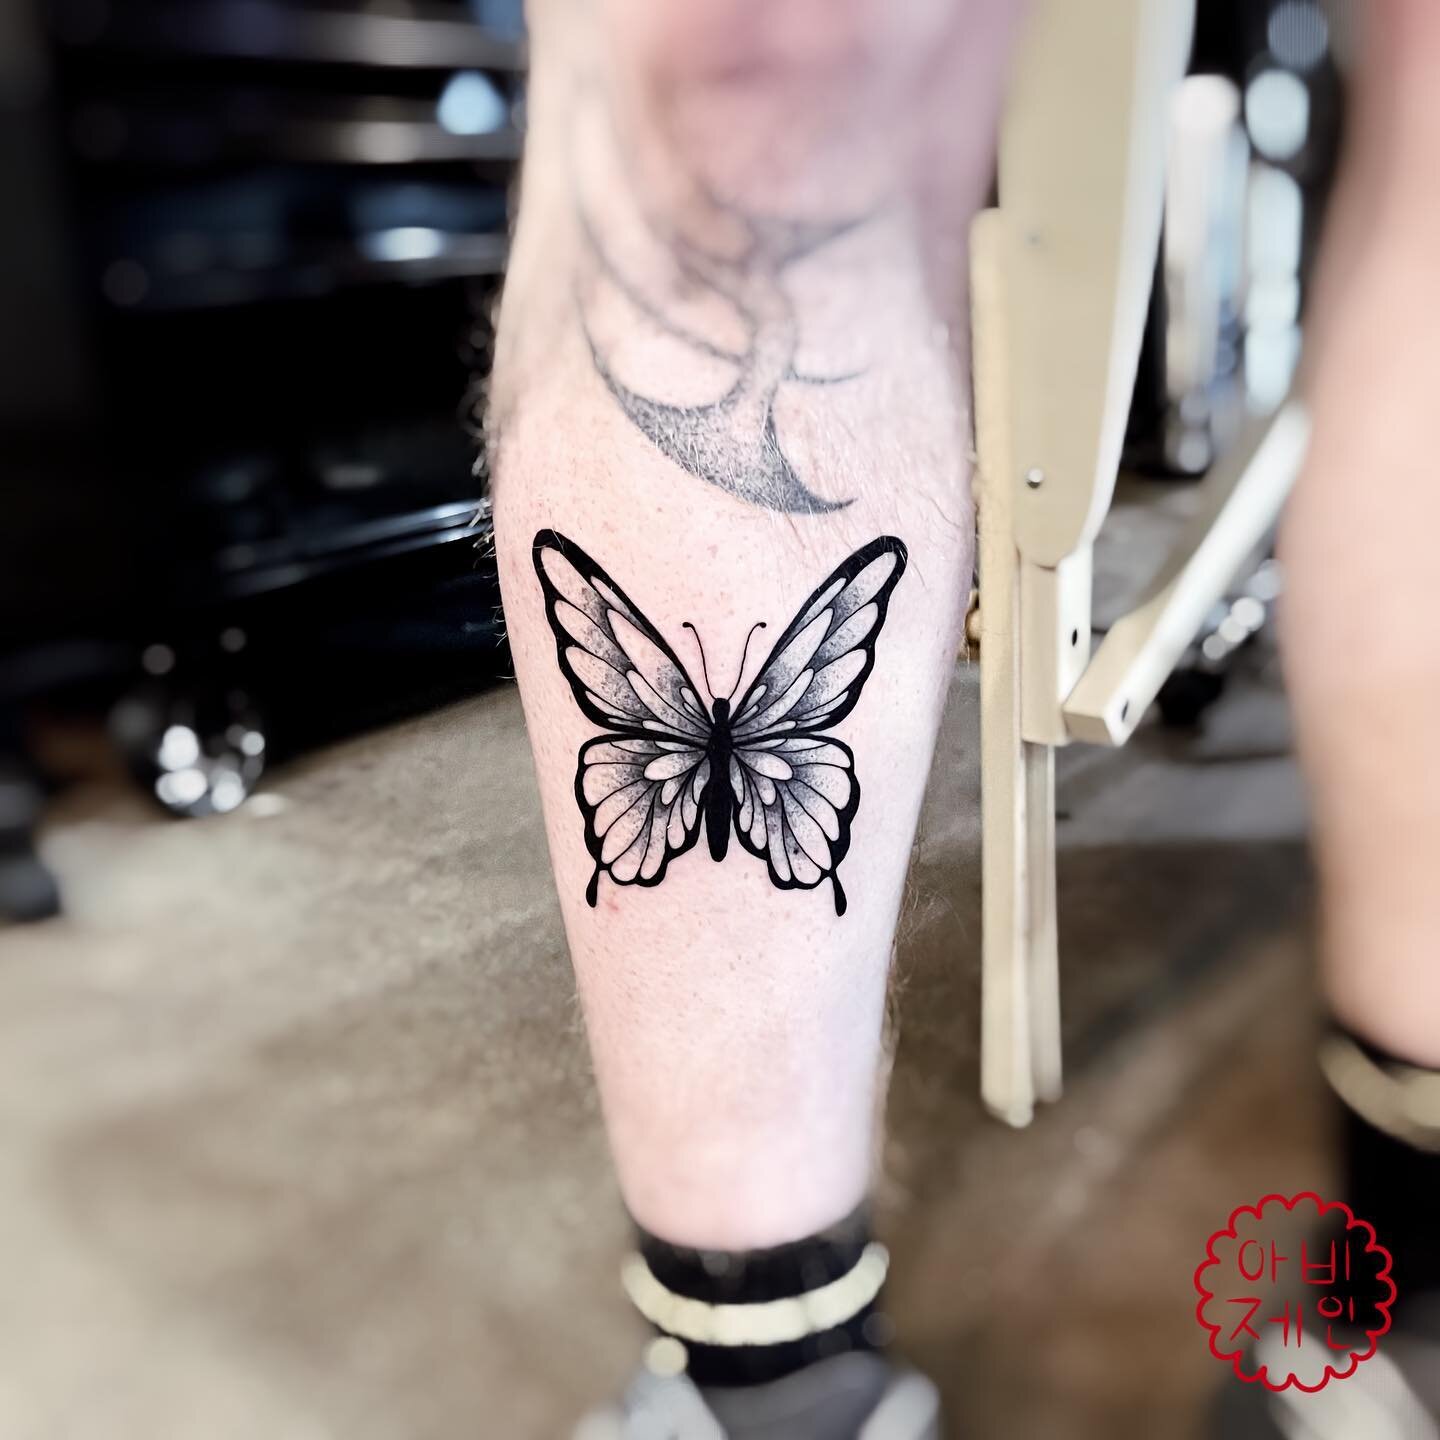 Thank you&hellip;. 🦋 

#tattoo #flashtattoo #flashtat #ink #inked #tattoodrawing #drawing #linework #lineworktattoo #tattooartist #artist #tattooart #art #tattooing #minneapolis #minneapolistattoo #minneapolistattooartist #minnesota #minnesotatattoo